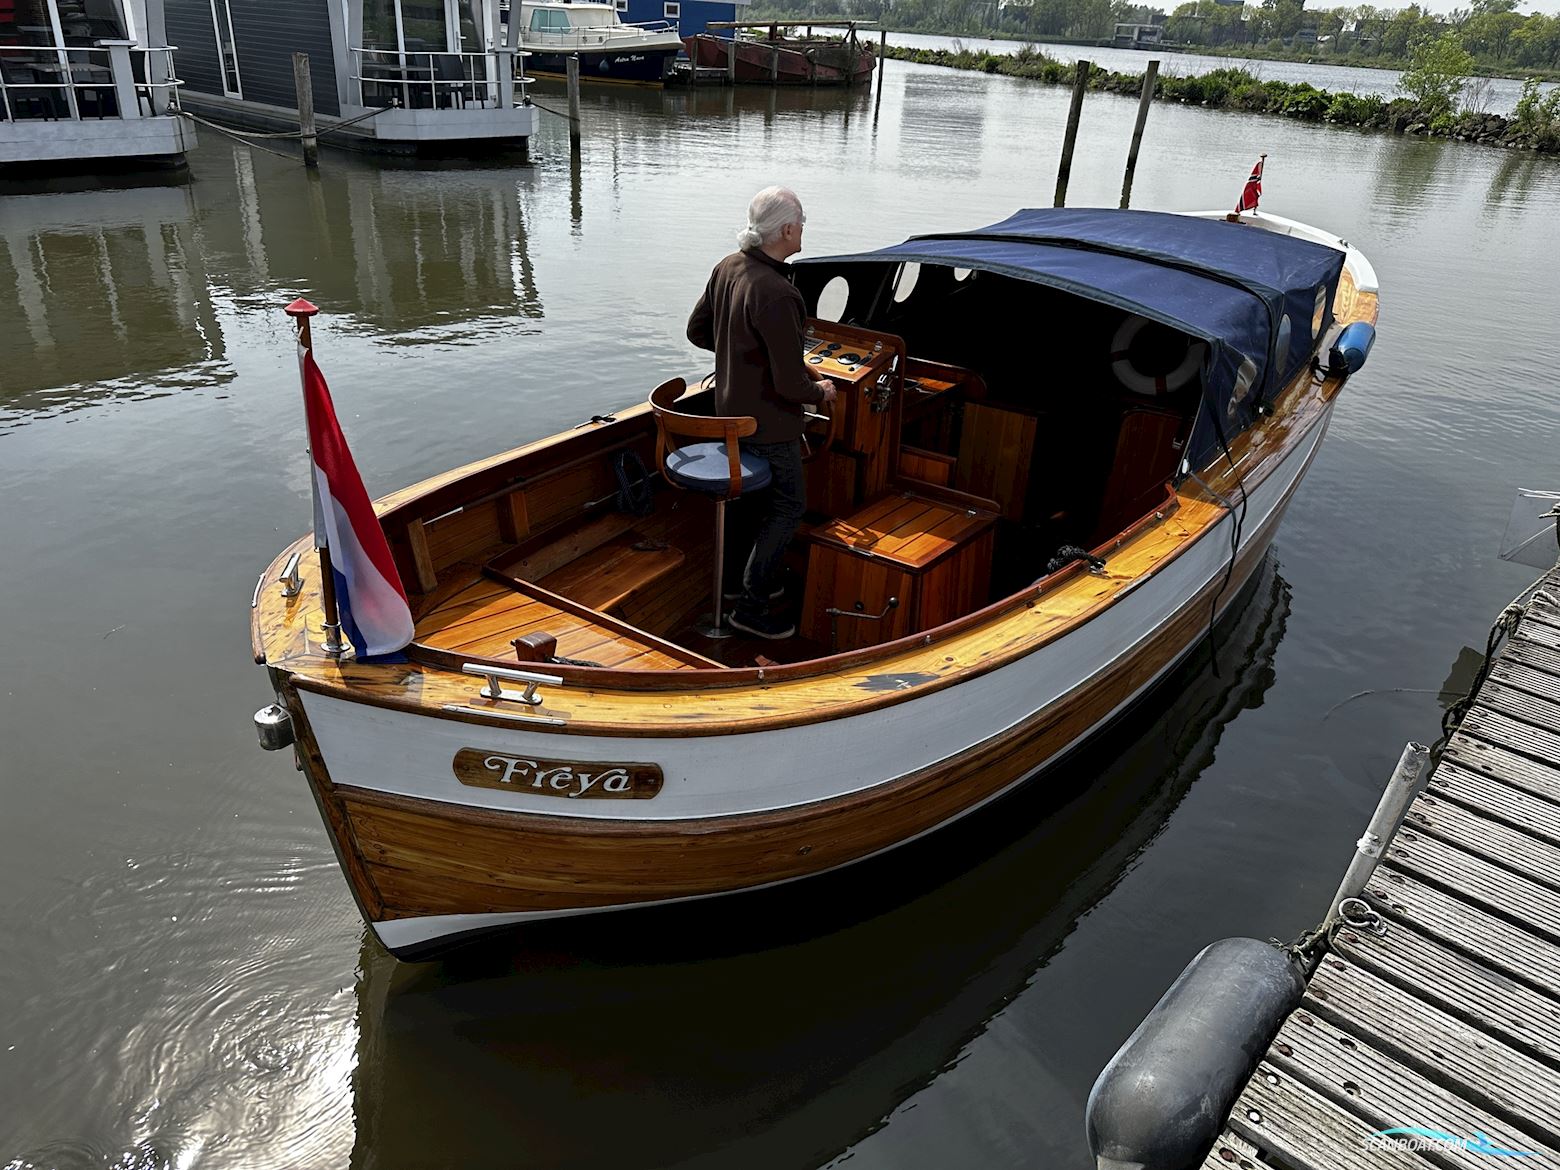 Sloep Noorse Kotter Motorbåd 2020, Holland